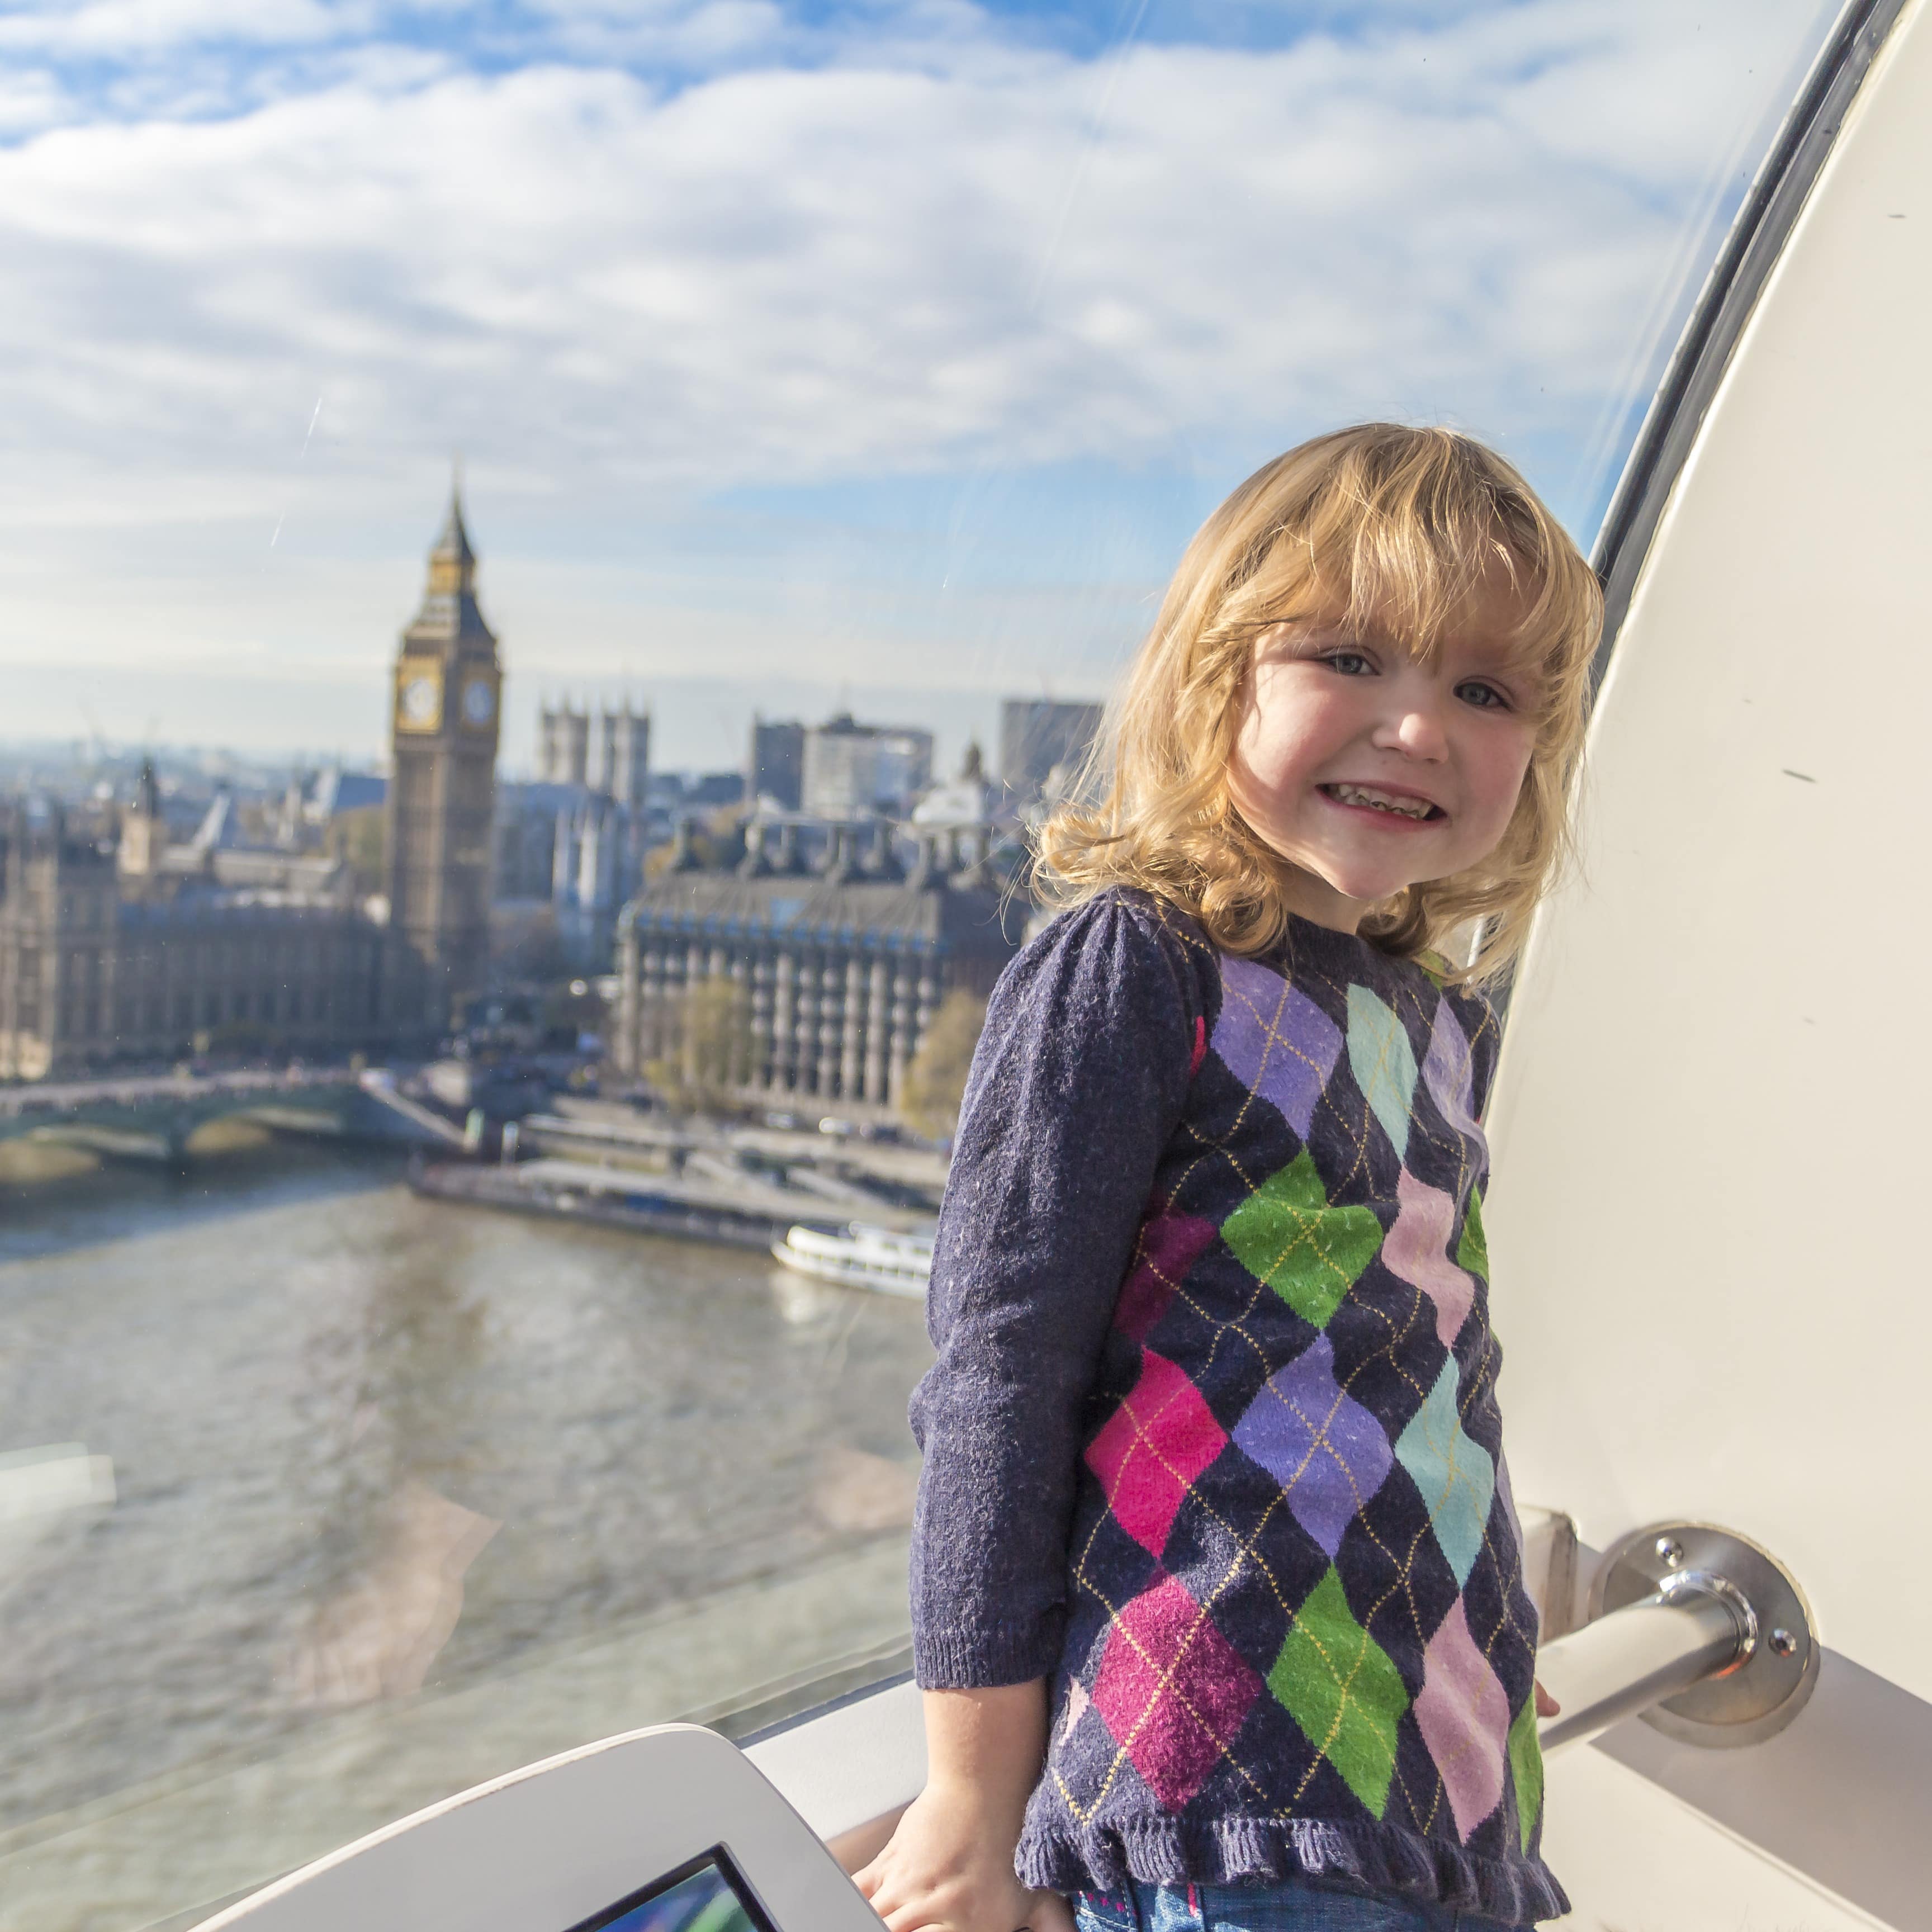 Mädchen in Pulli und Jeans in einer Kabine des London Eye, die Themse, Big Ben und die Houses of Parliament sind zu sehen.